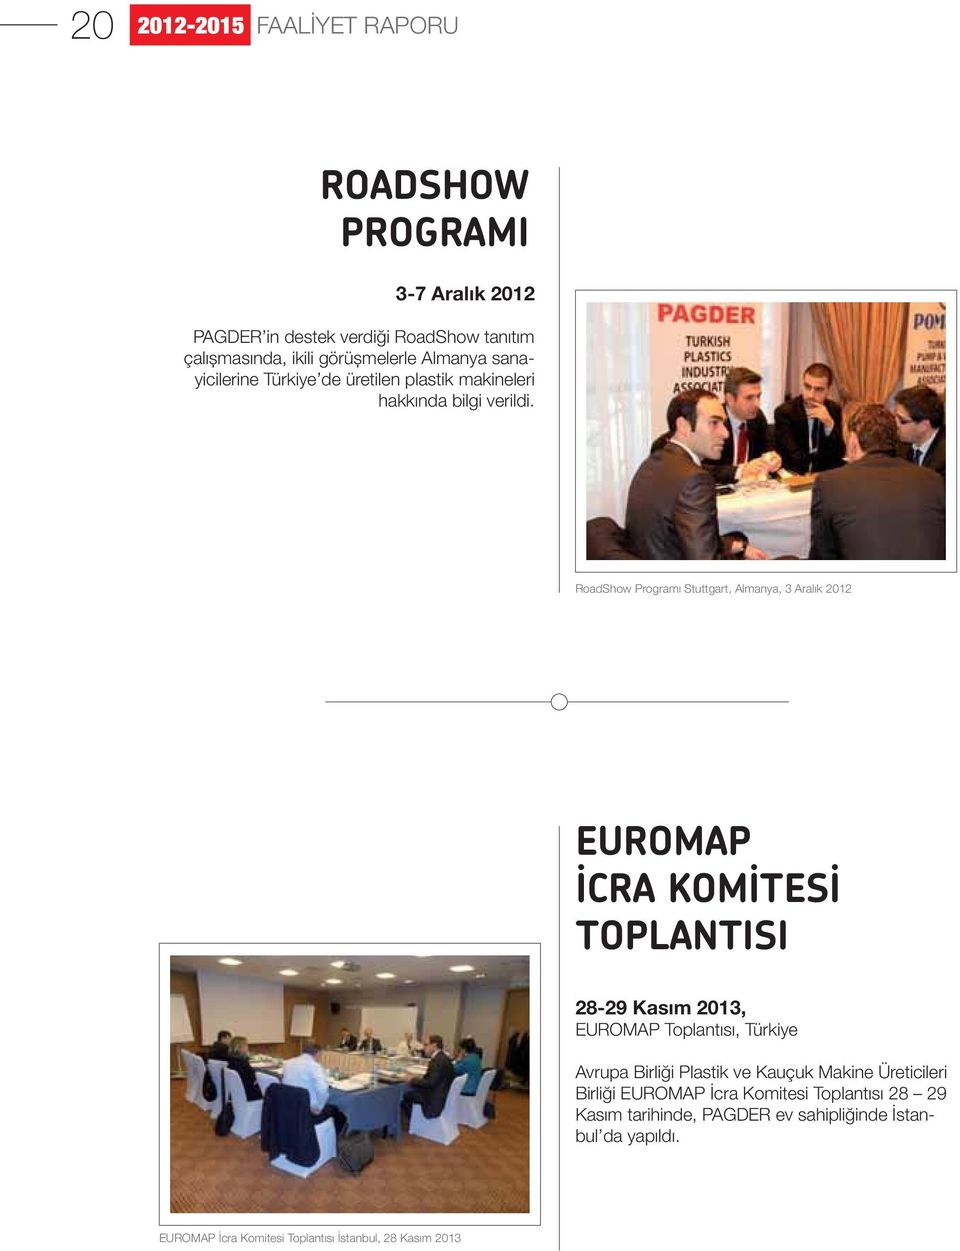 RoadShow Programı Stuttgart, Almanya, 3 Aralık 2012 EUROMAP İCRA KOMİTESİ TOPLANTISI 28-29 Kasım 2013, EUROMAP Toplantısı, Türkiye Avrupa